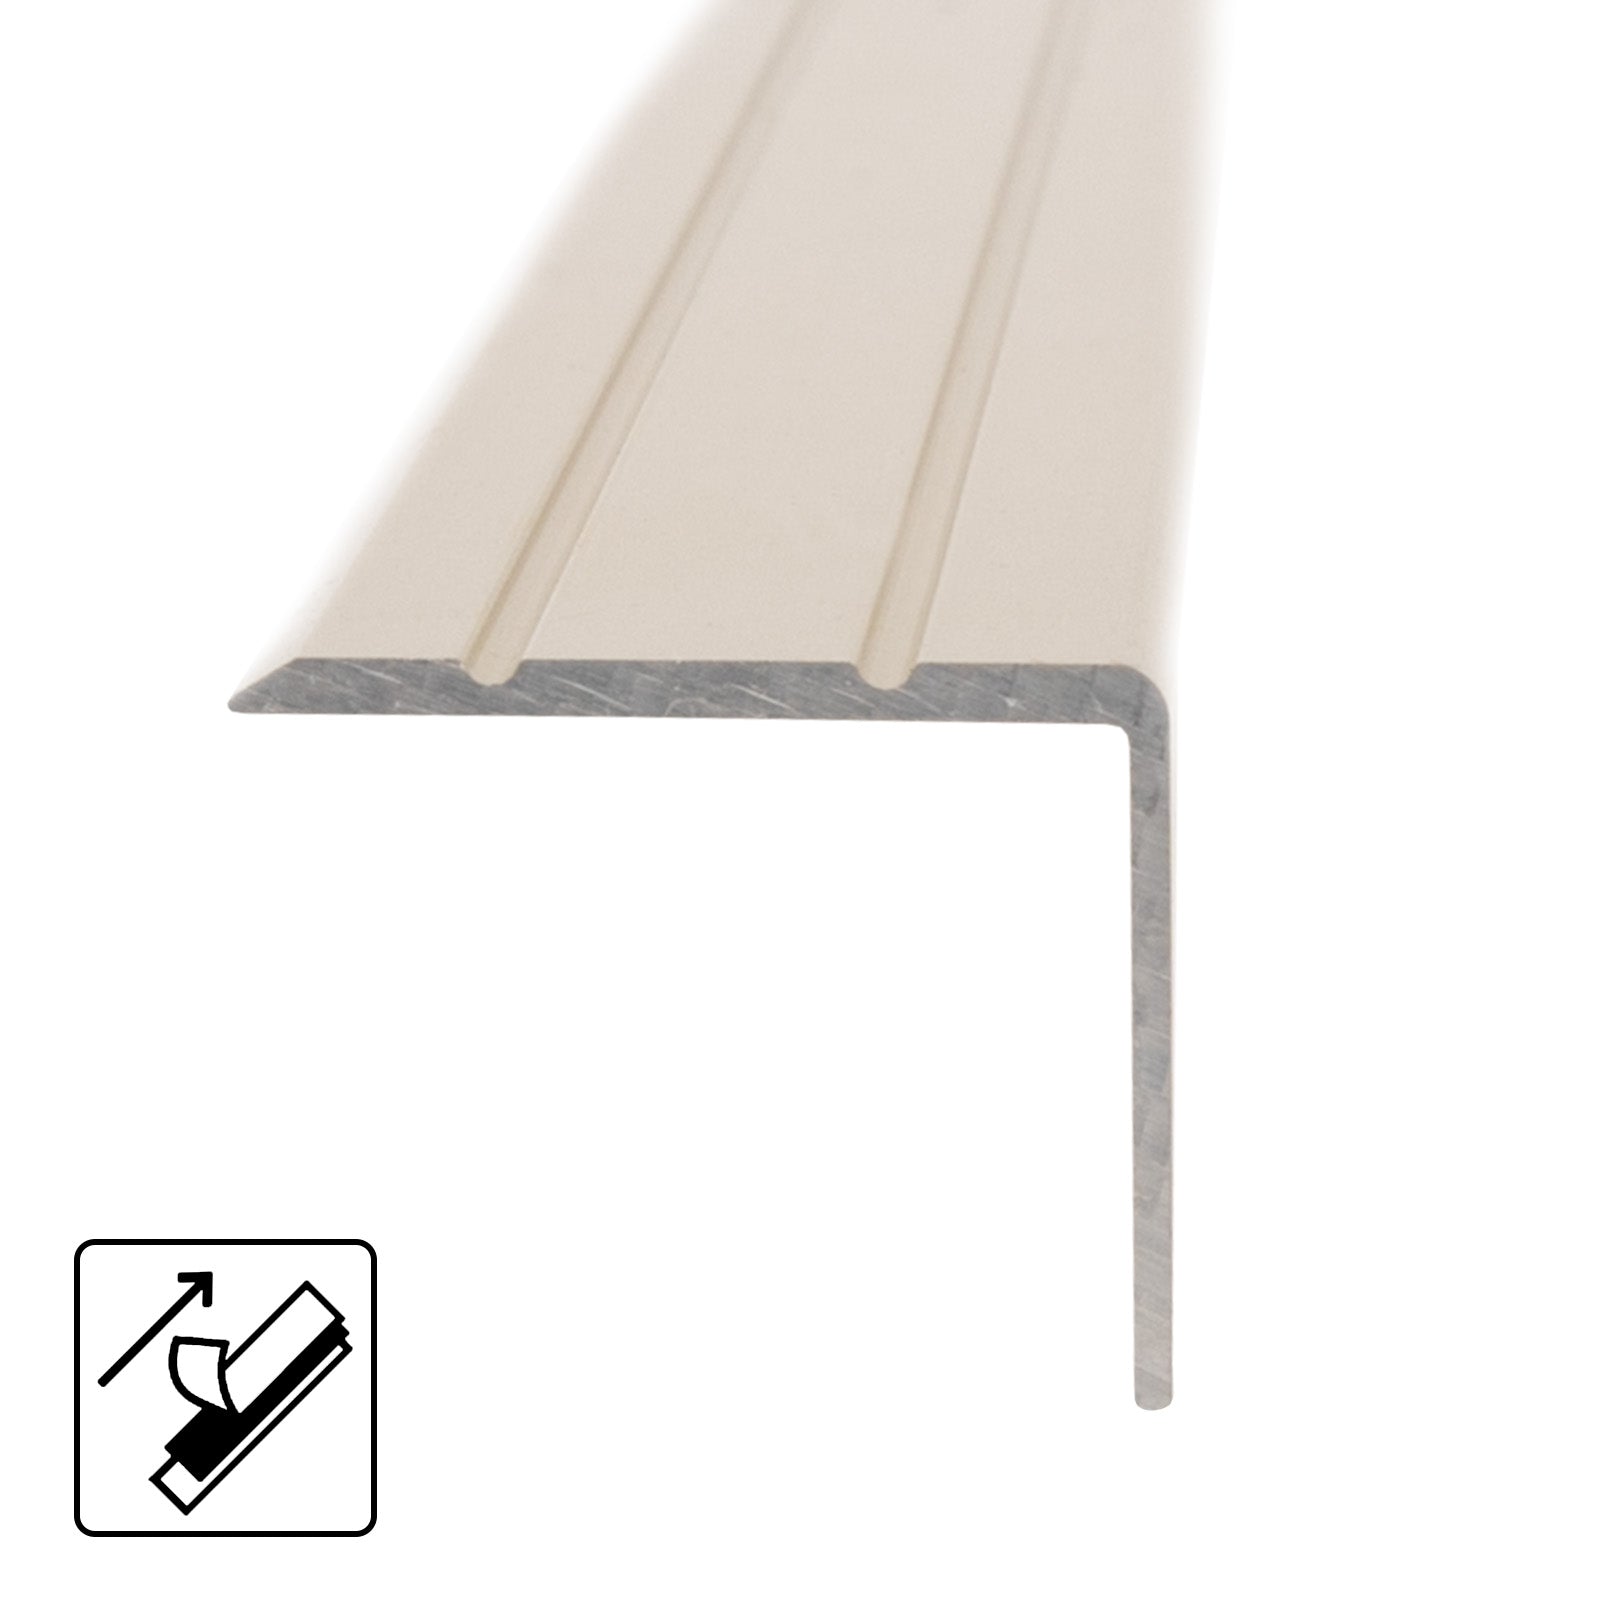 Malaise Op en neer gaan Startpunt Trapprofiel | Voor traptreden & bordessen | Aluminium | 24,5 x 20 mm — NL  Floordirekt